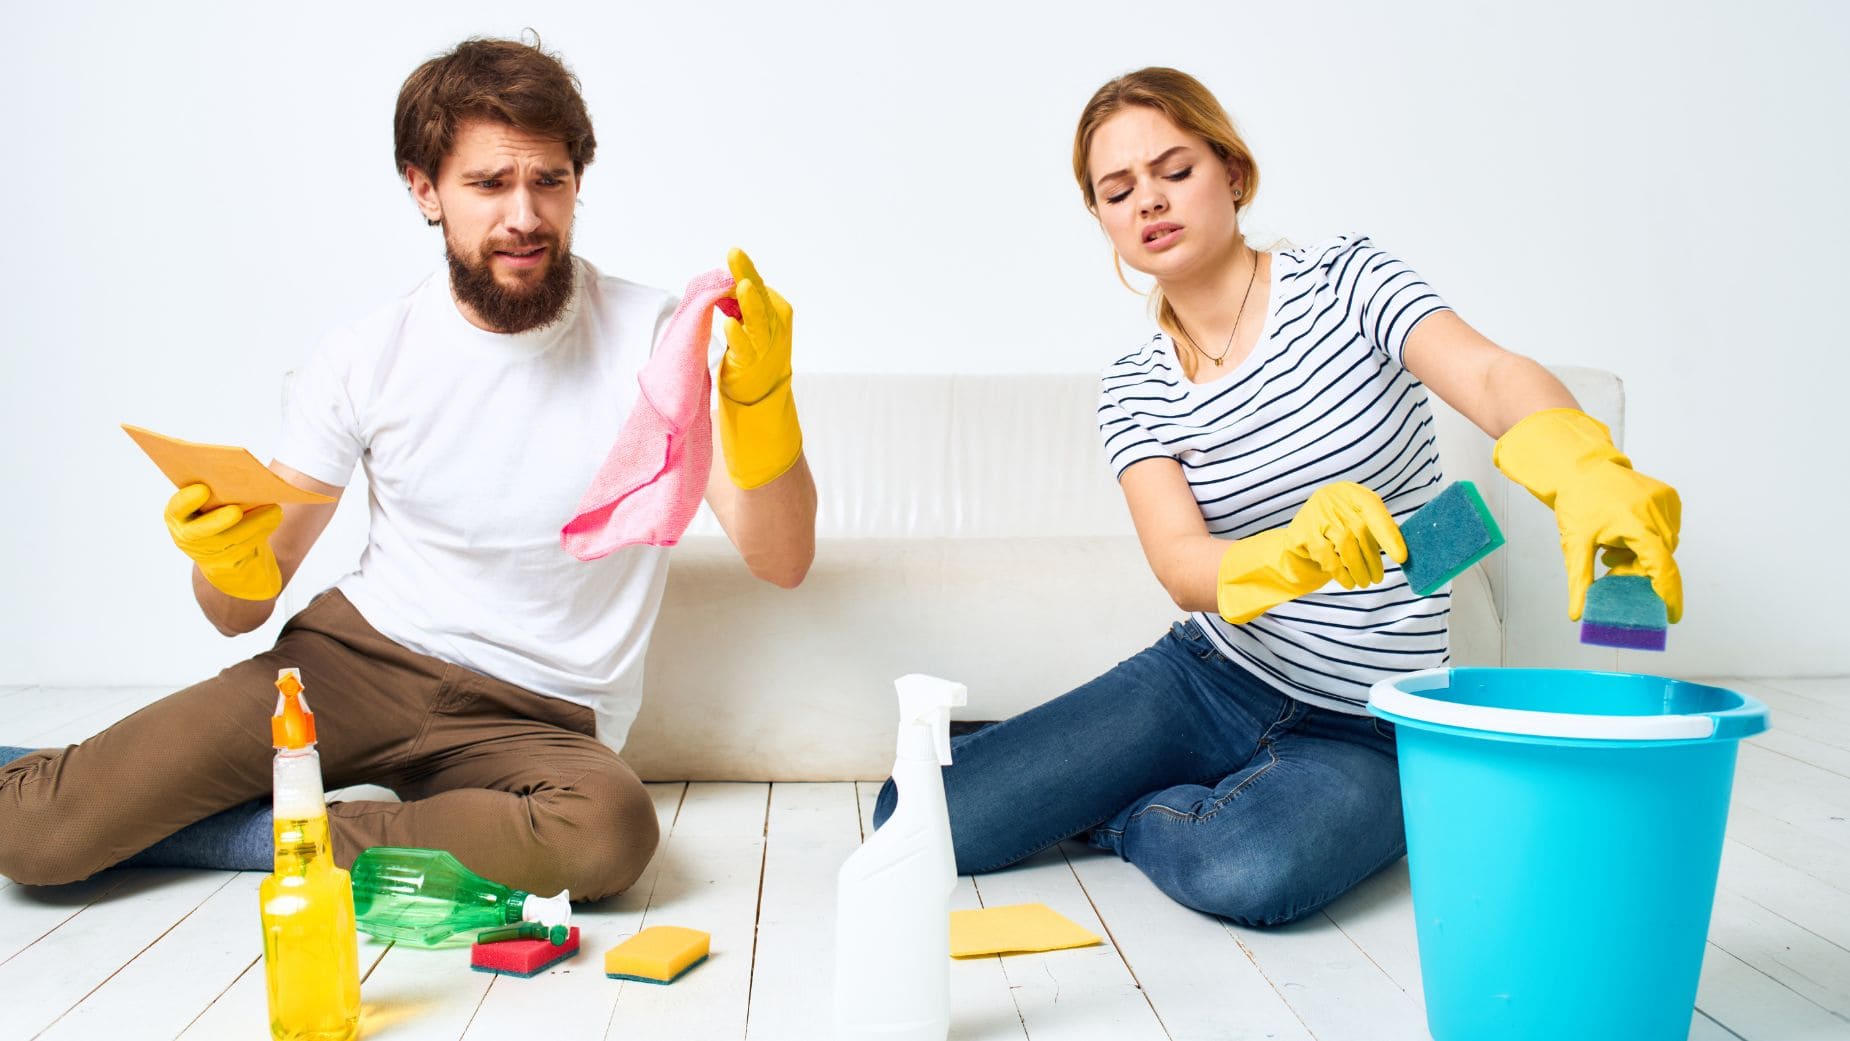 La OCU explica qué productos de limpieza no deberías usar